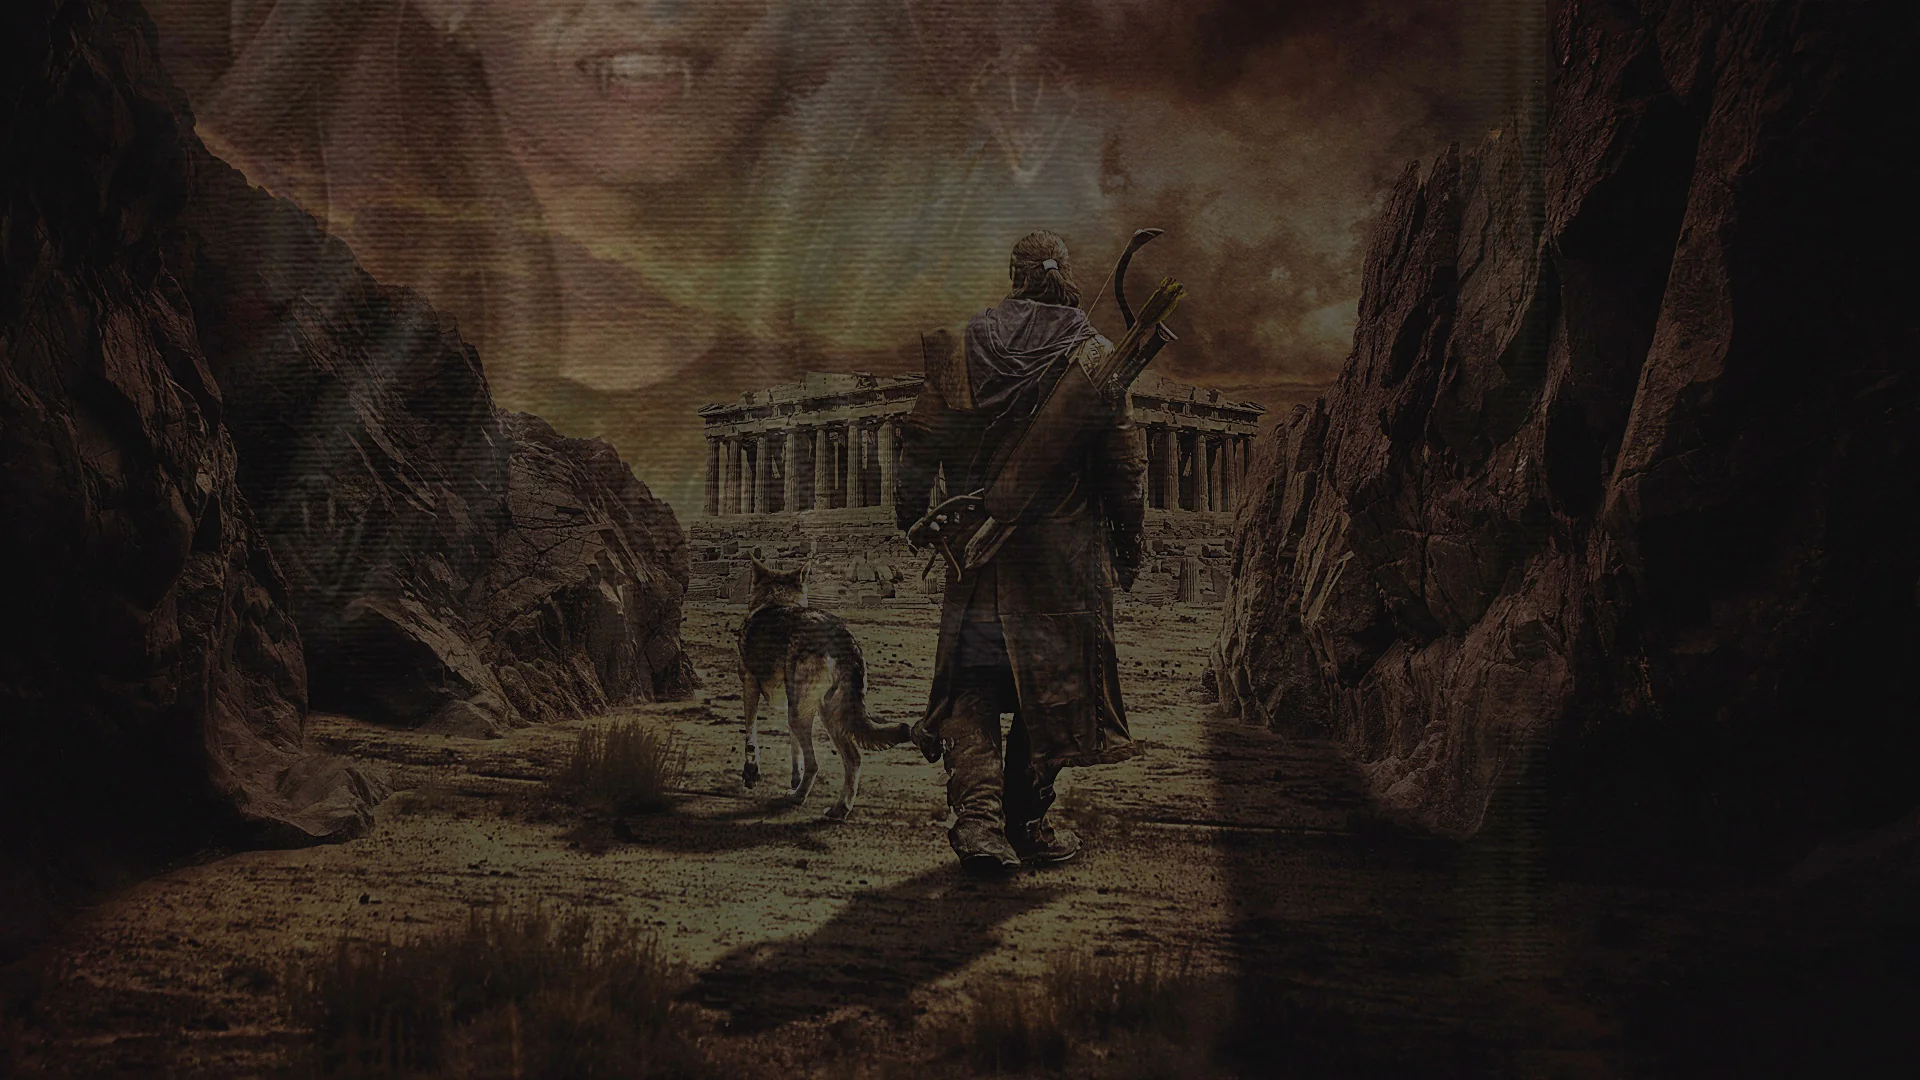 Лучник с собакой проходя через ущелье идёт к руинам храма и с лева полупрозрачное лицо вампирши